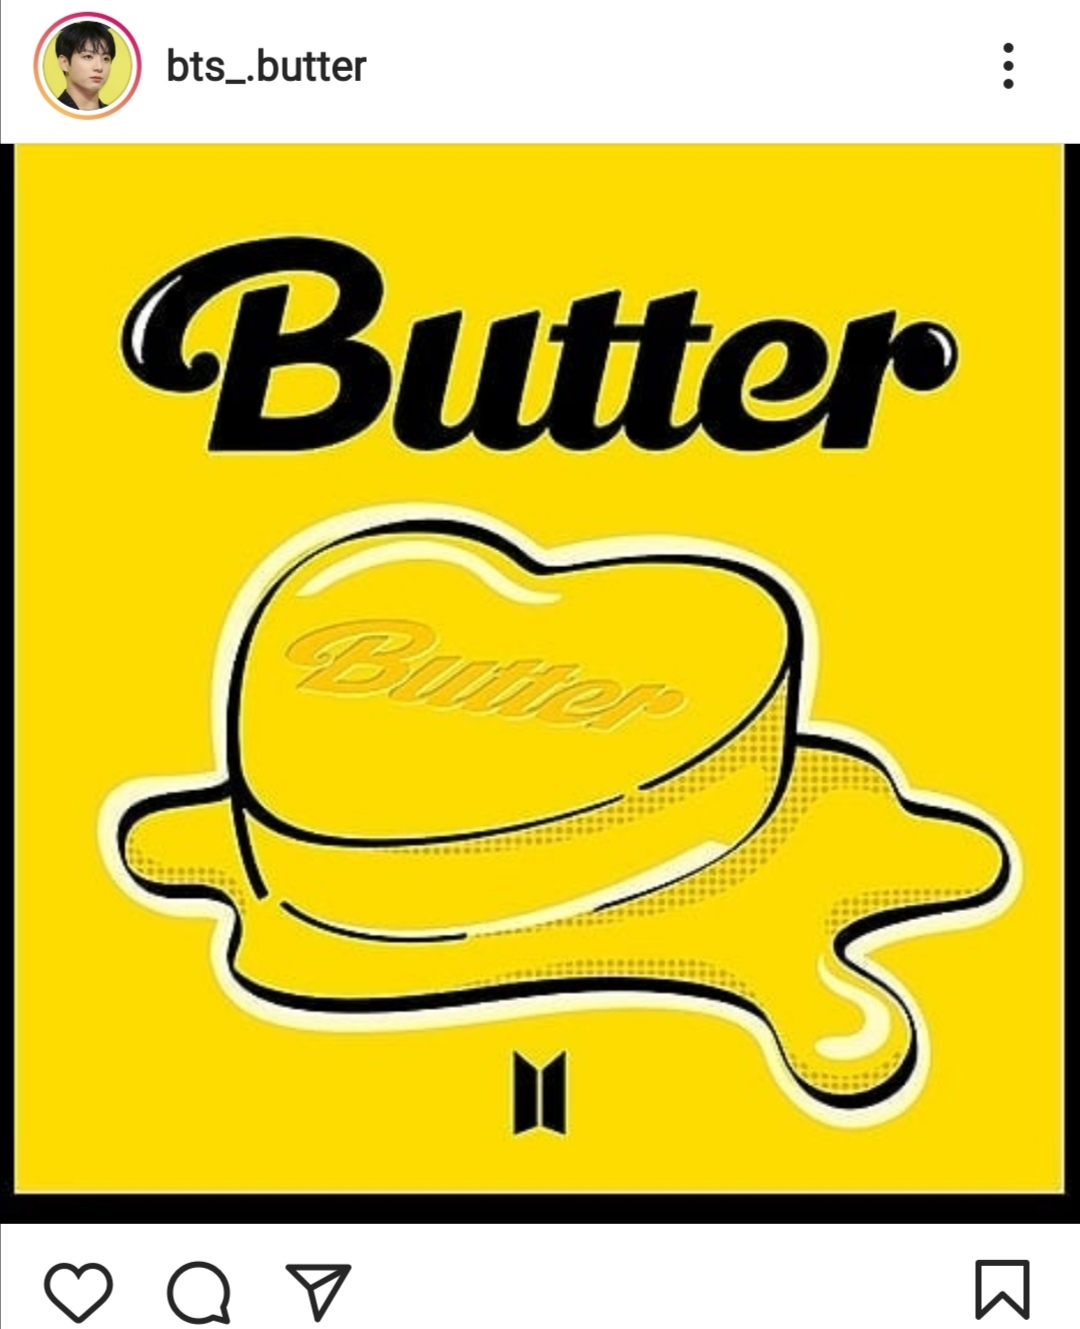 أغنية Butter تحصد ملايين المشاهدة- الصورة من حساب BTS على إنستغرام